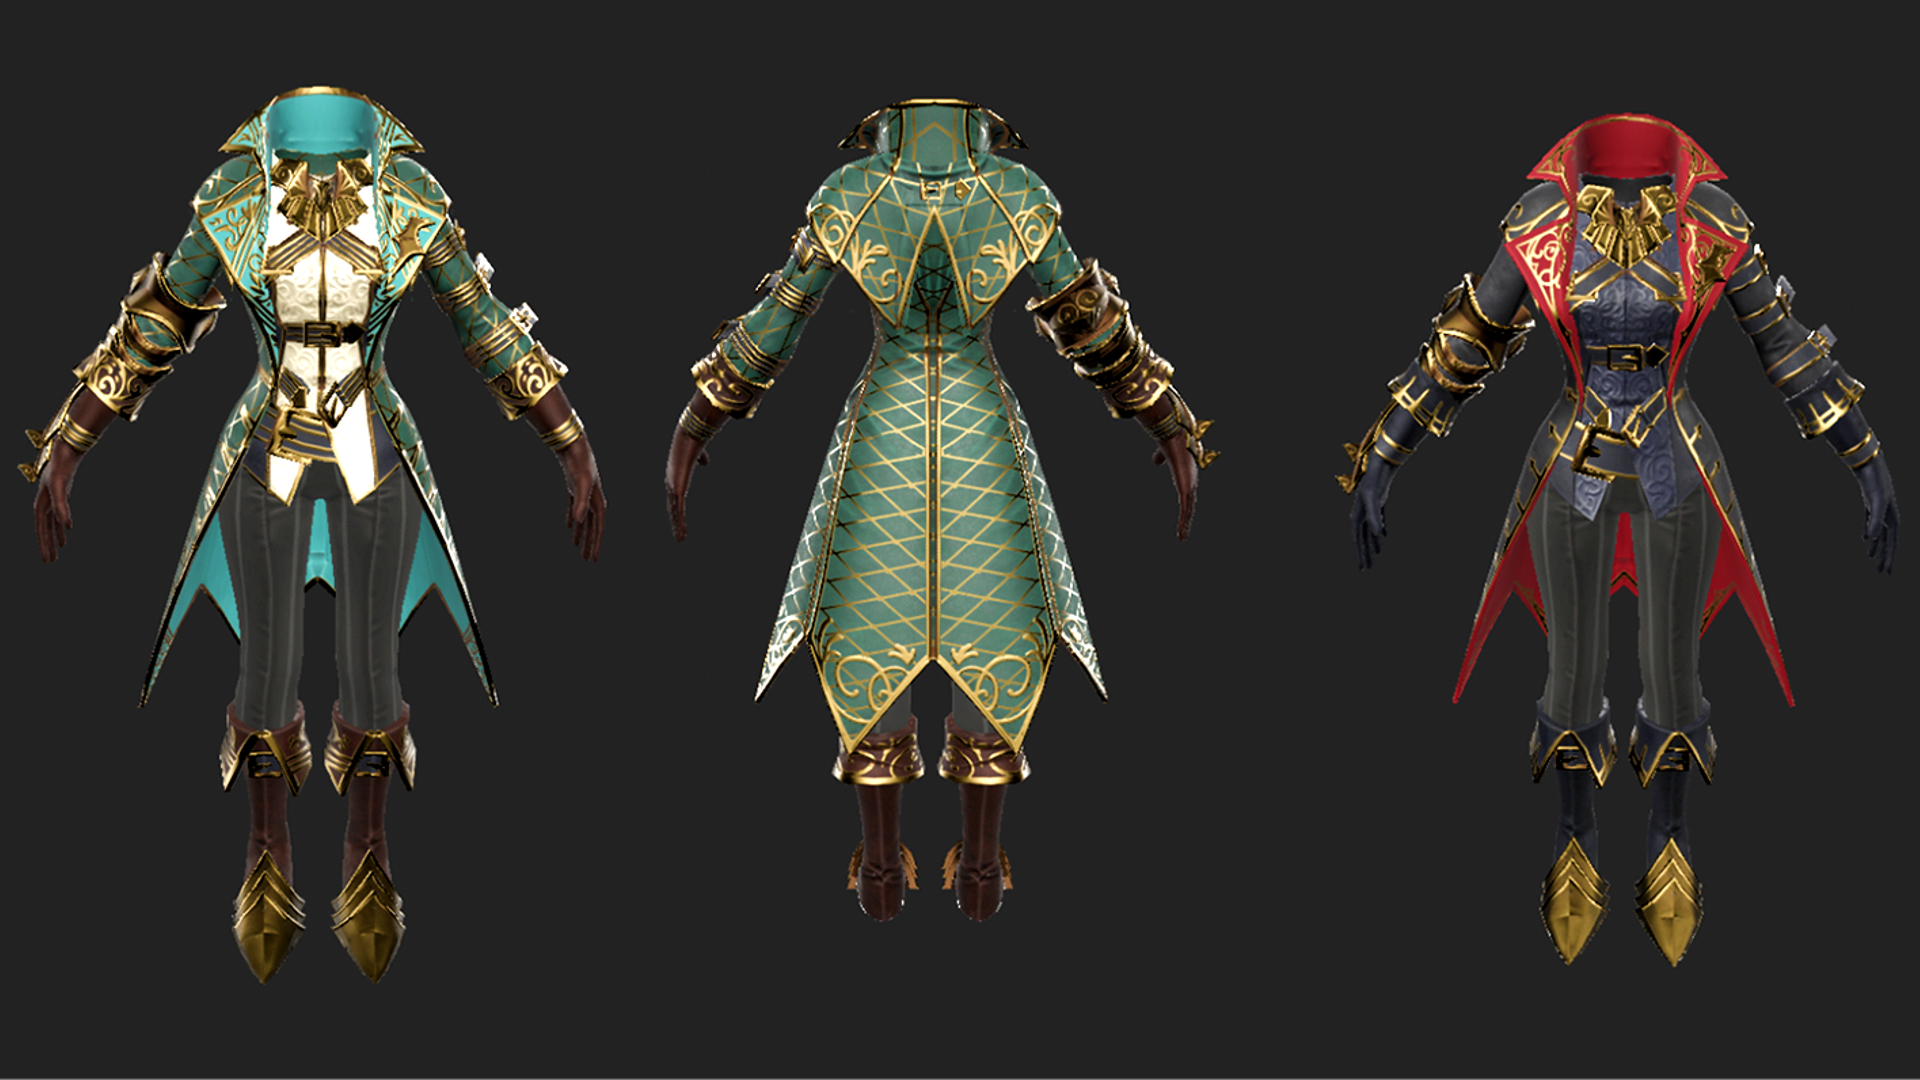 V Rising clothing concept art showcasing new armor designs